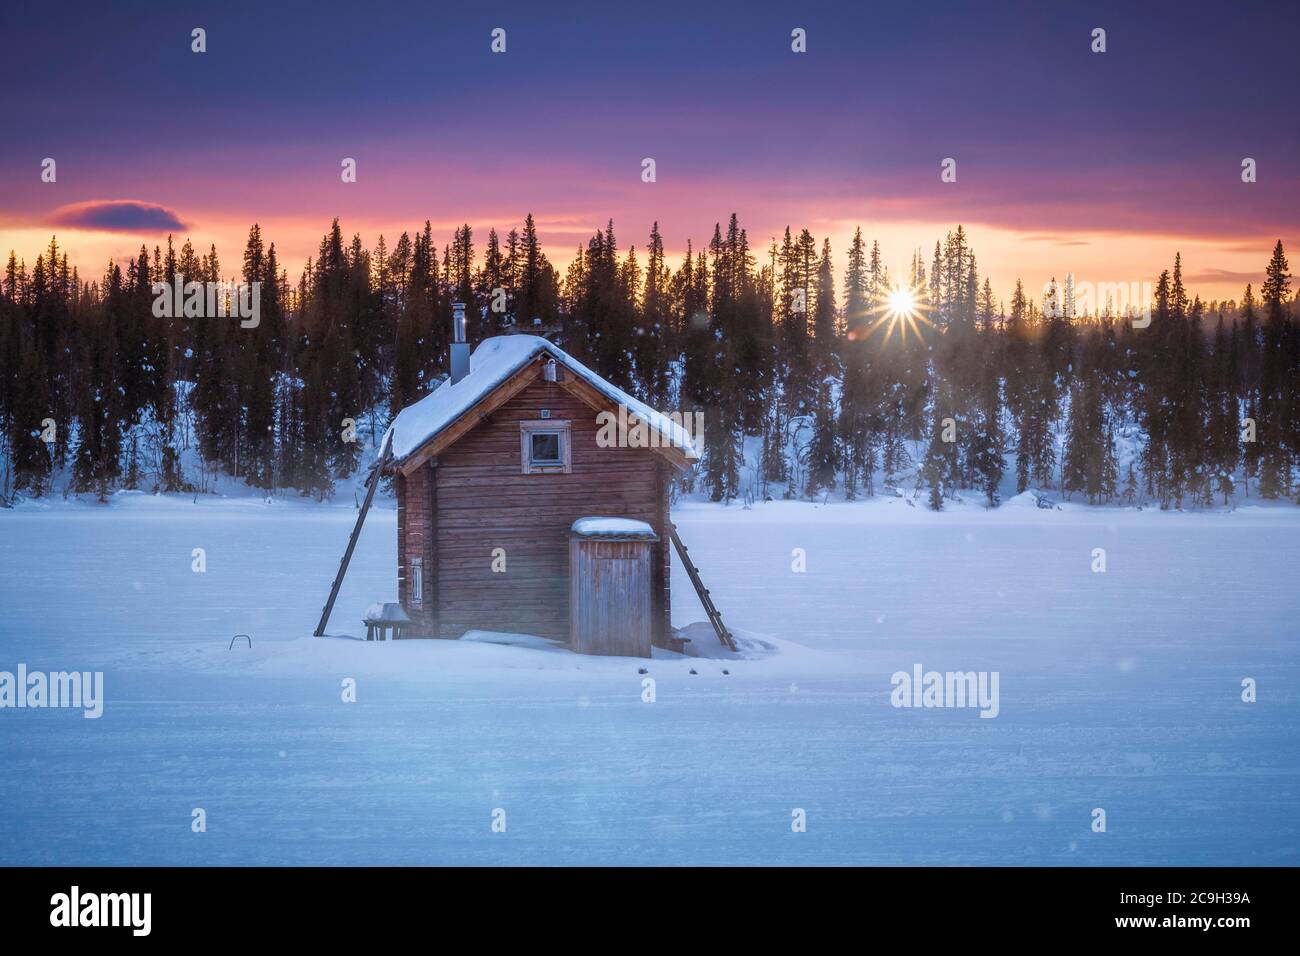 Petite hutte en bois contre la lumière à des températures extrêmement basses à l'aube, Skaulo, Norrbotten laen, Suède Banque D'Images